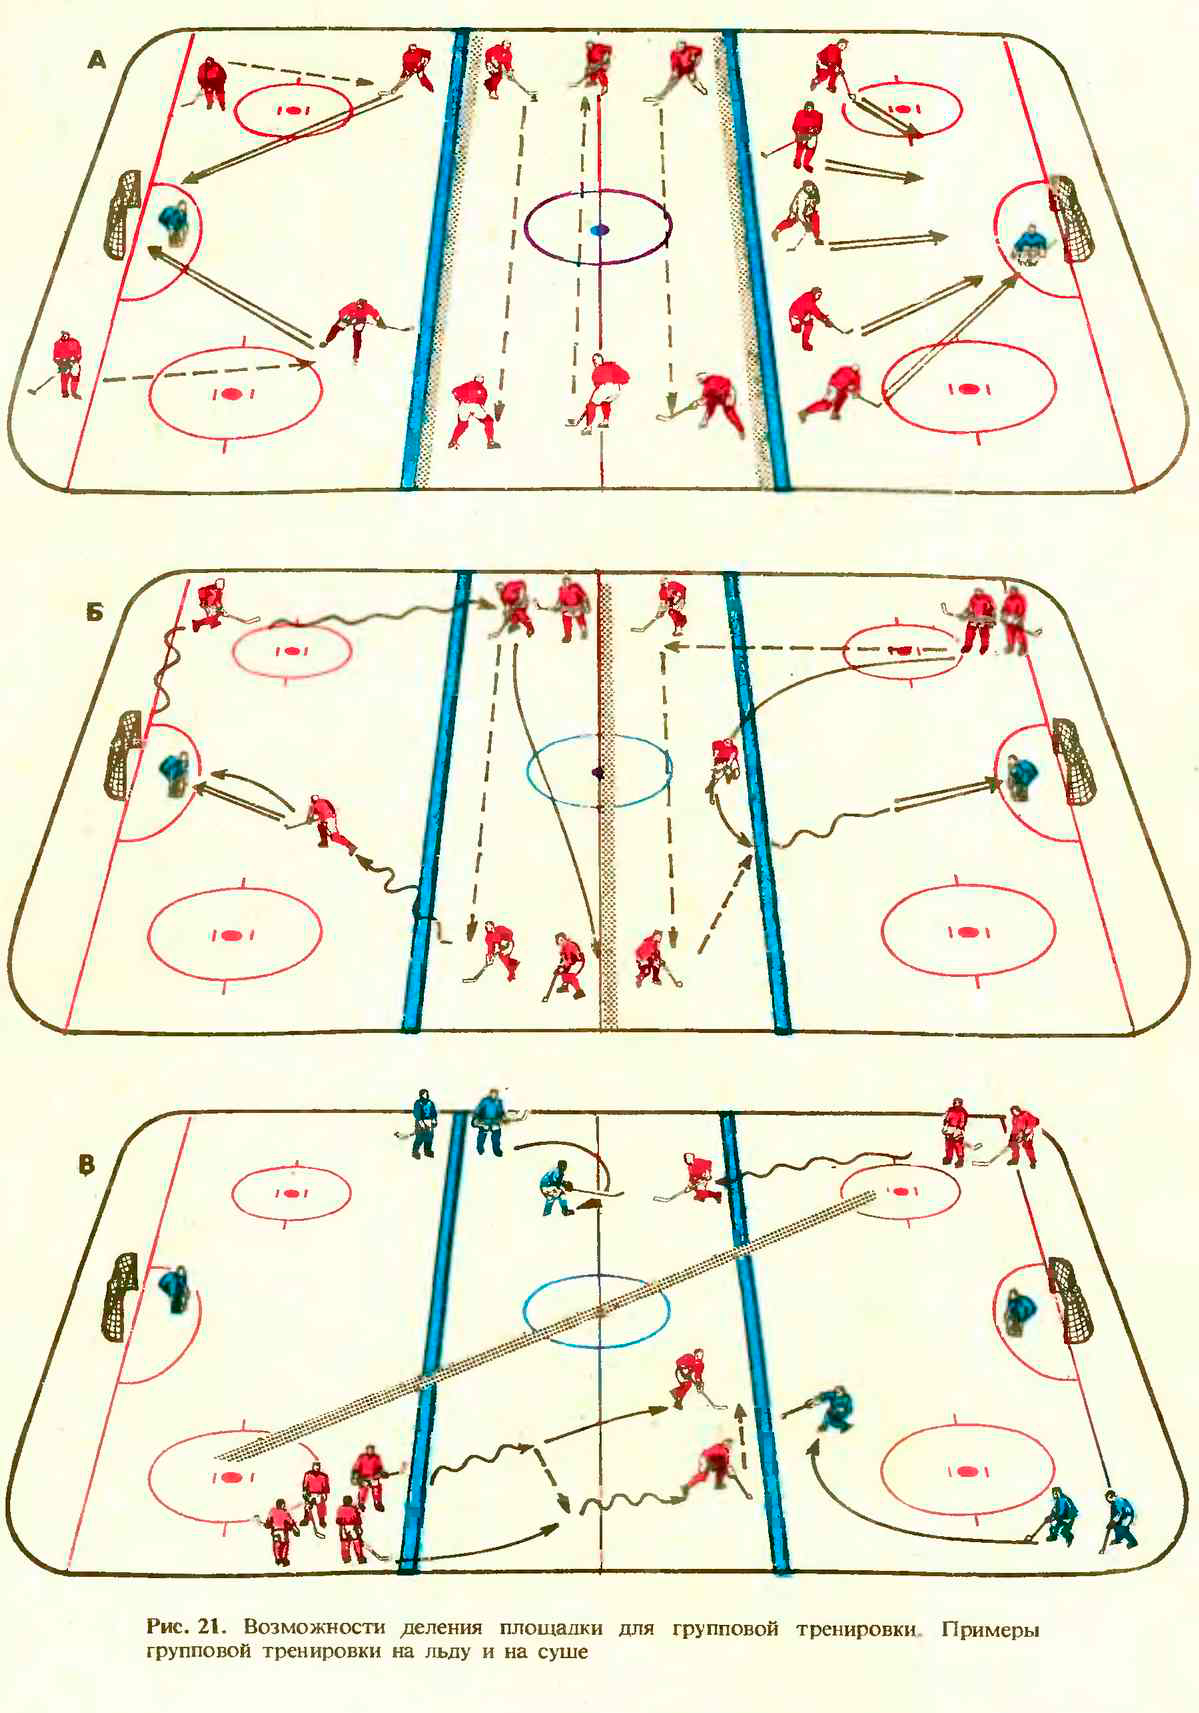 Остановка игры в хоккее. Тактика игры в хоккей с шайбой. Упражнения для хоккеистов на льду с шайбой. Упражнения с шайбой на льду для тренировок по хоккею. Упражнения для хоккеистов на льду с шайбой для детей.